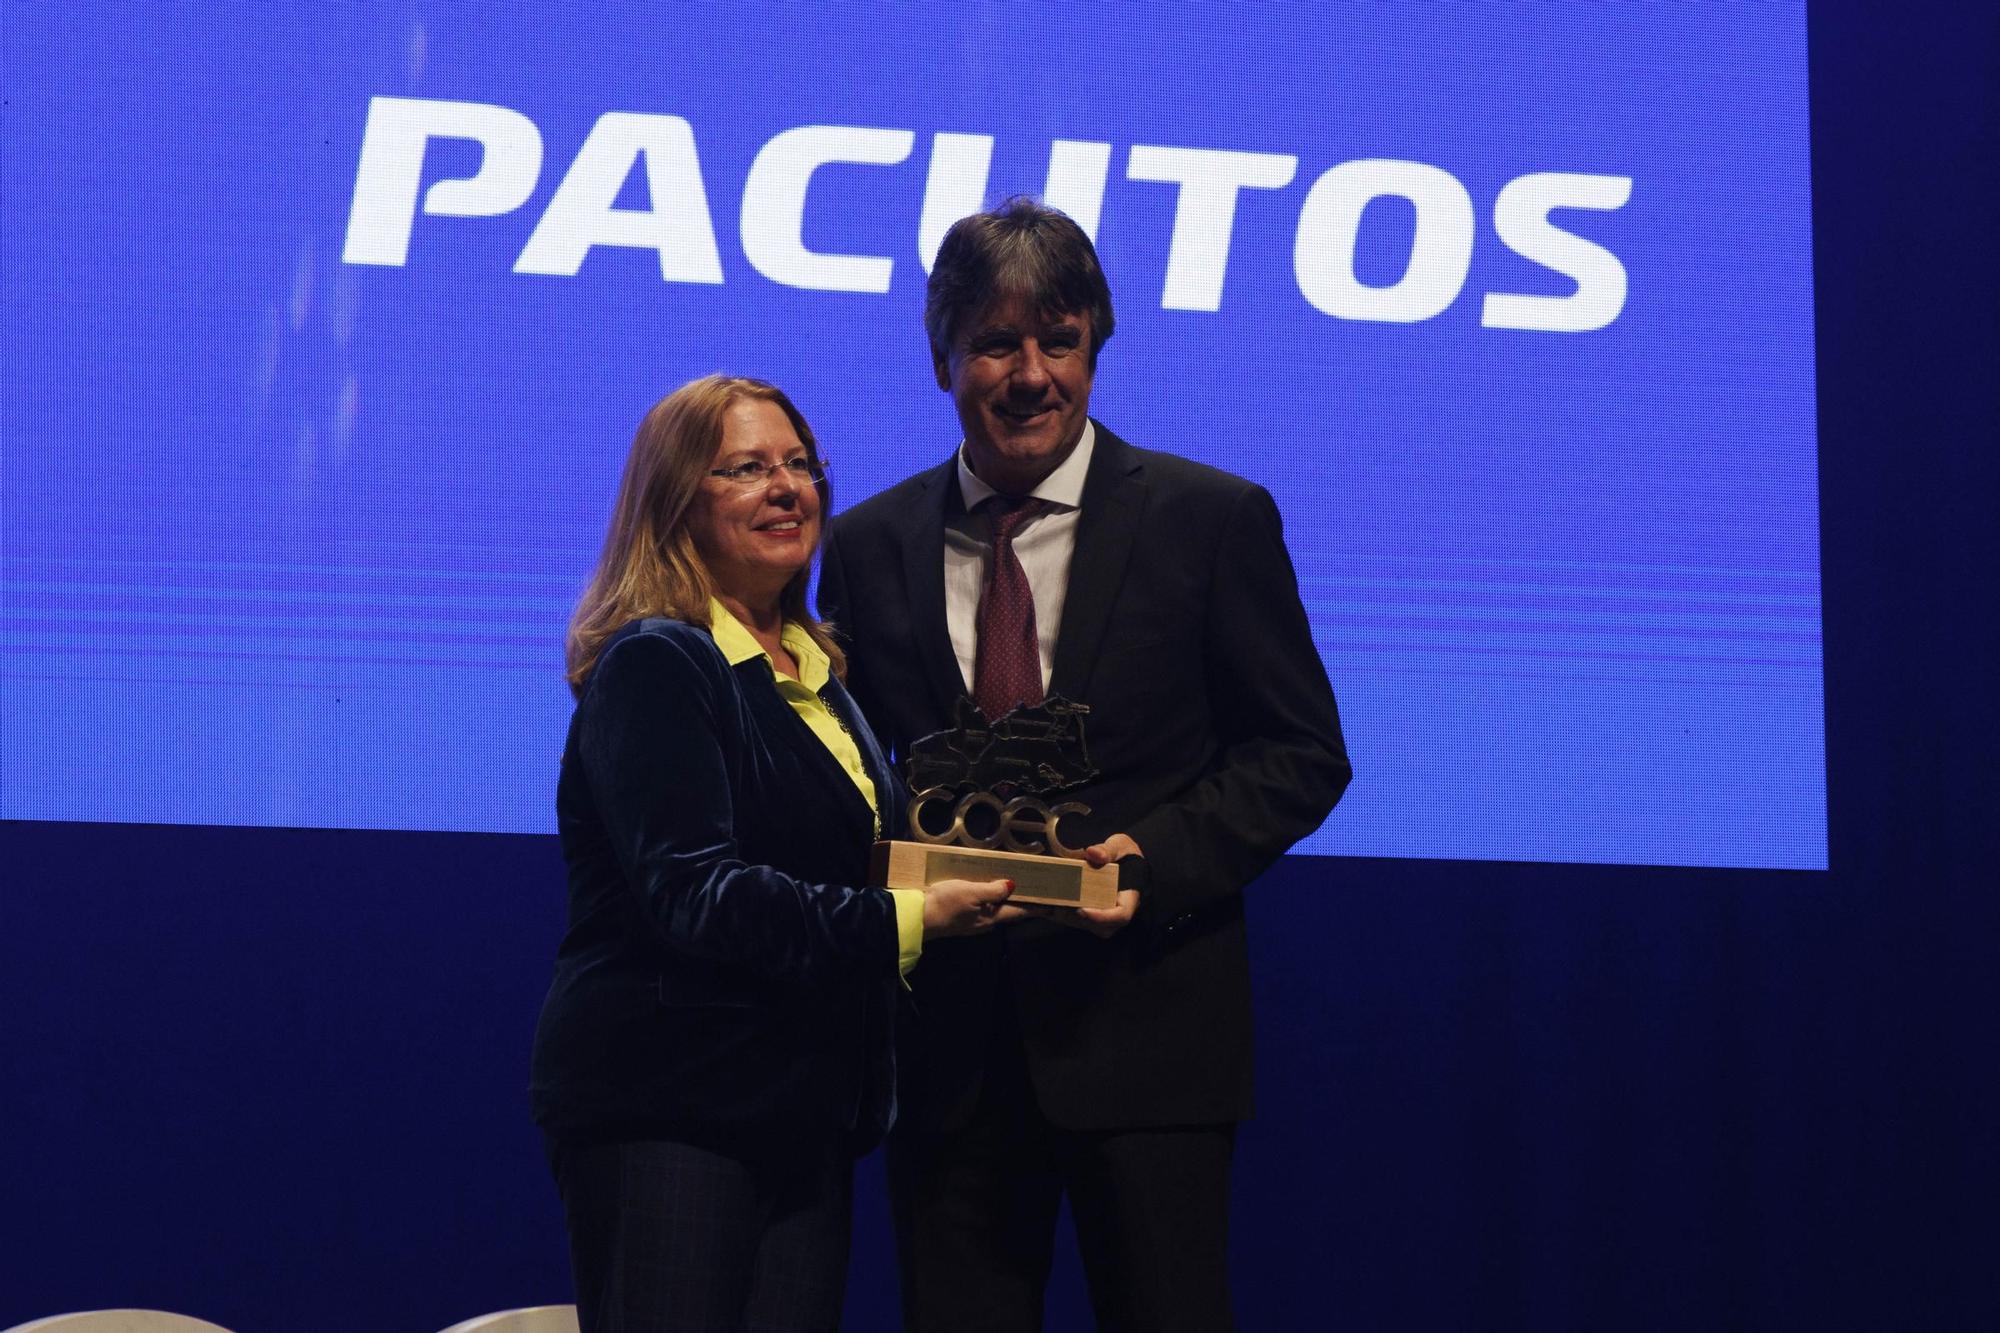 Las imágenes de los premios COEC en Cartagena